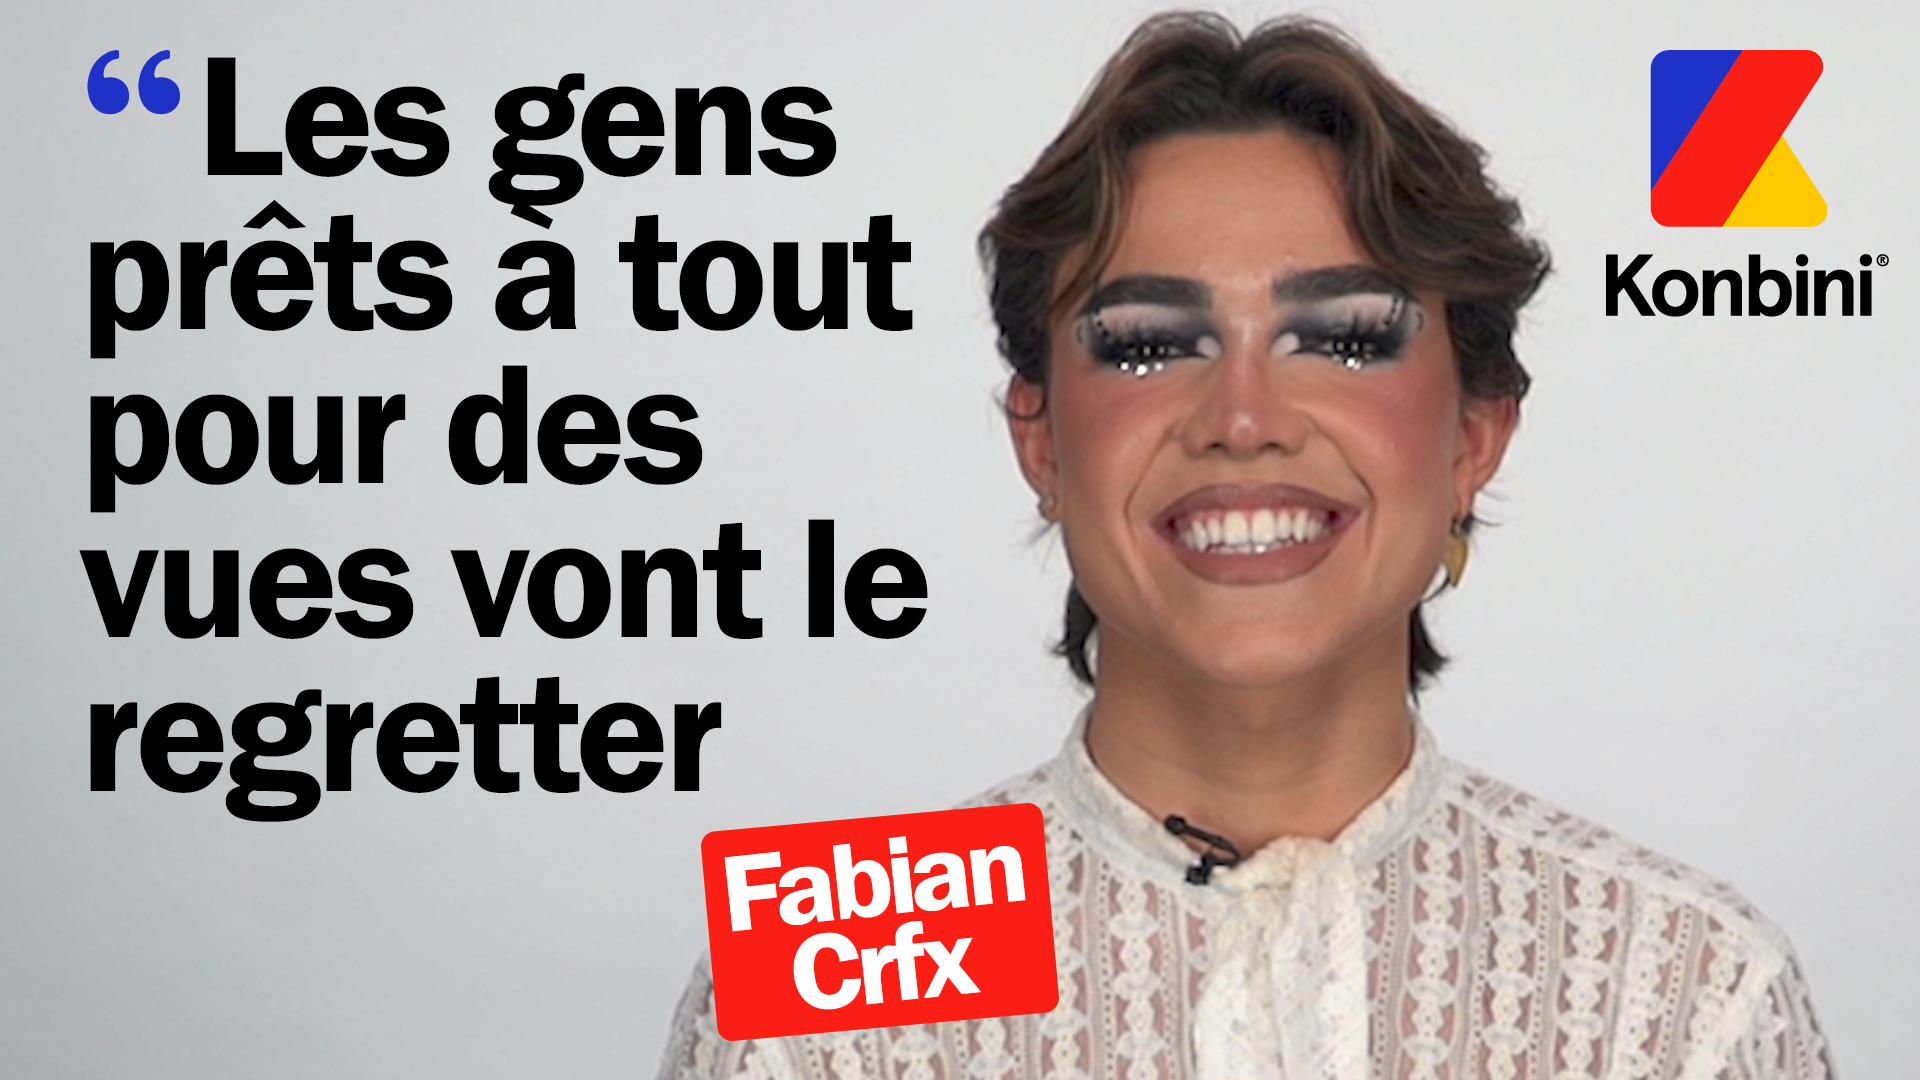 L’interview Interneteur de la star du make-up sur YouTube : Fabian Crfx